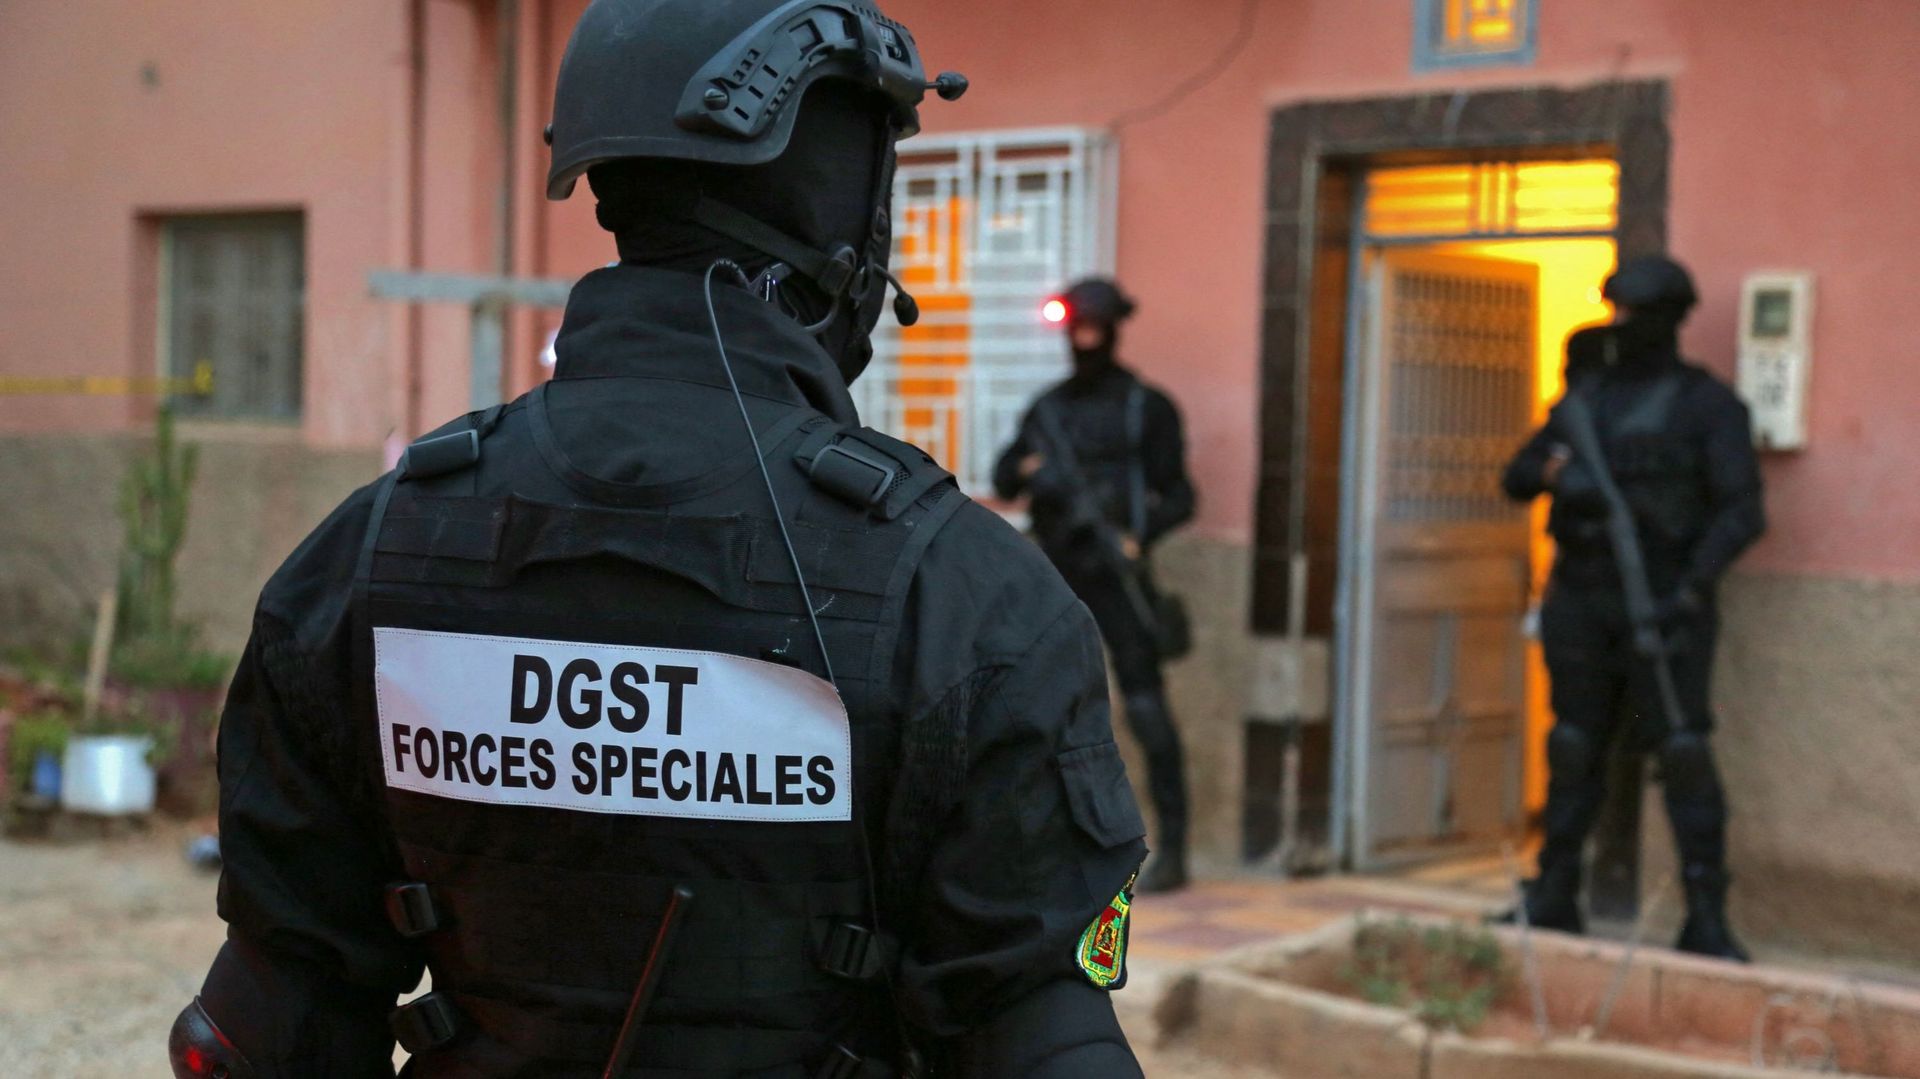 Image d’illustration : des membres du Bureau central d’investigation judiciaire (BCIJ) du Maroc, qui supervise les opérations antiterroristes, se rassemblent devant une maison dans la ville d’Errachidia, dans le sud du pays, le 14 septembre 2021.